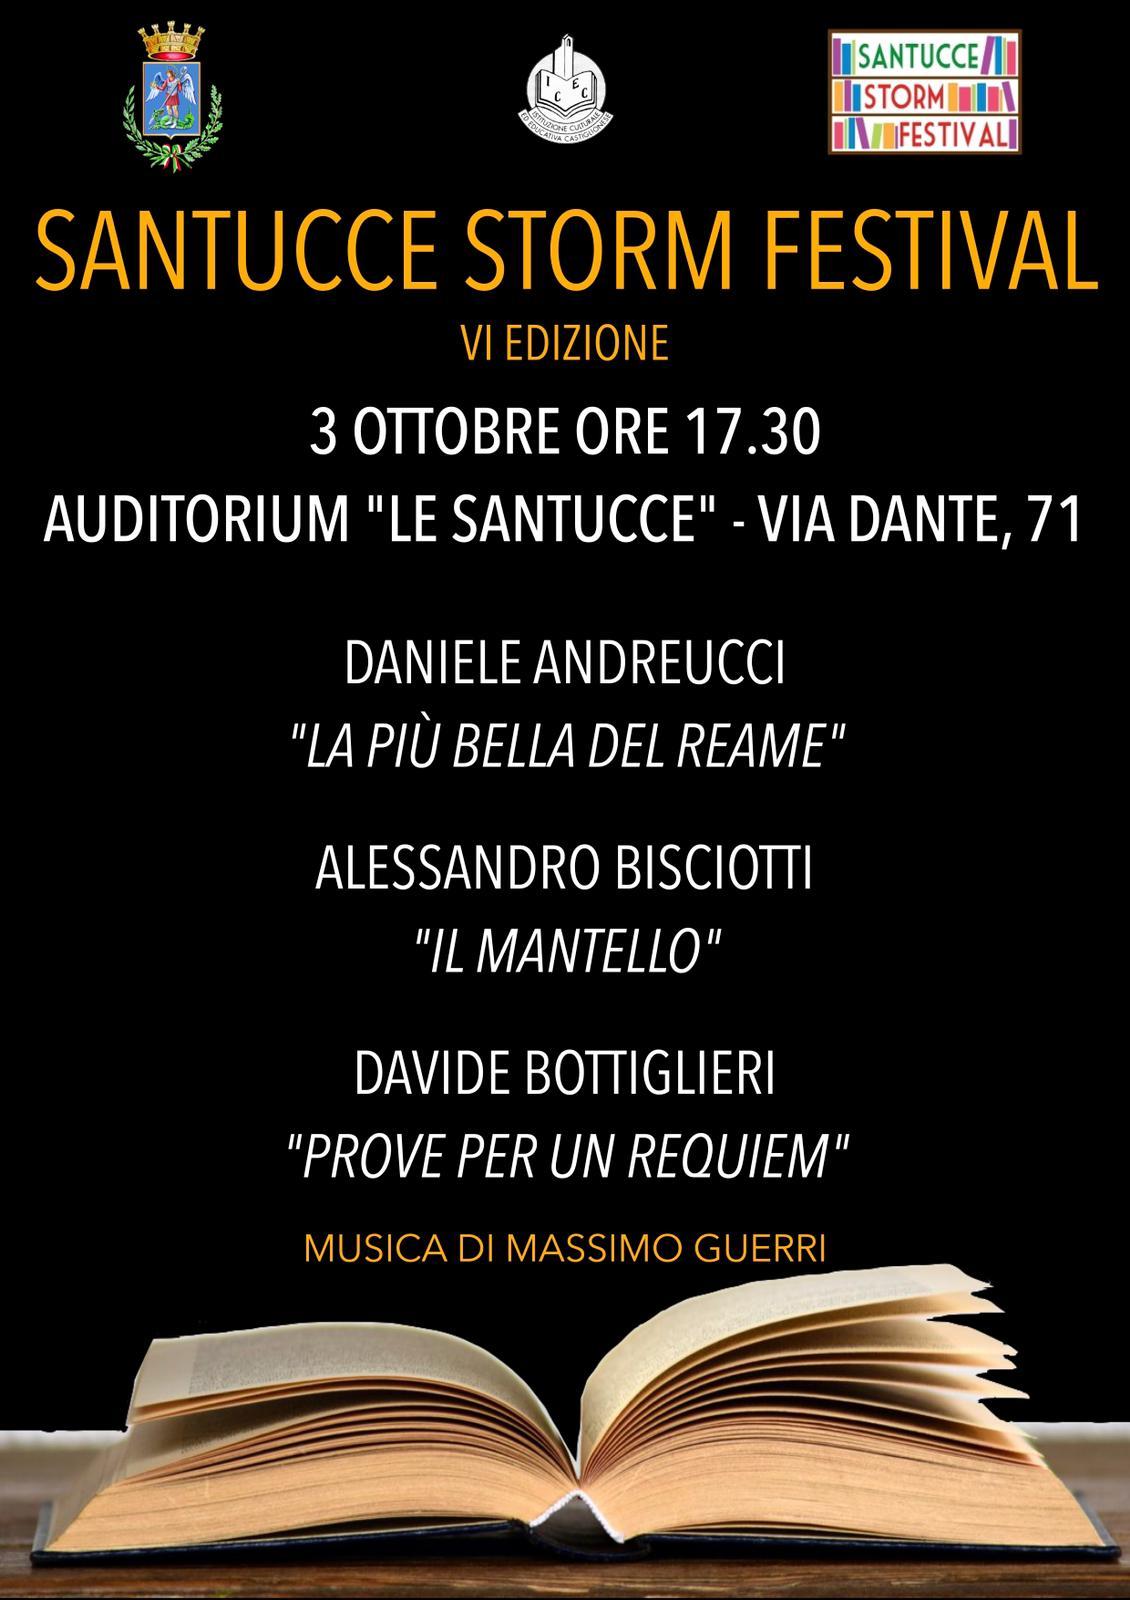 Santucce Storm Festival VI edizione